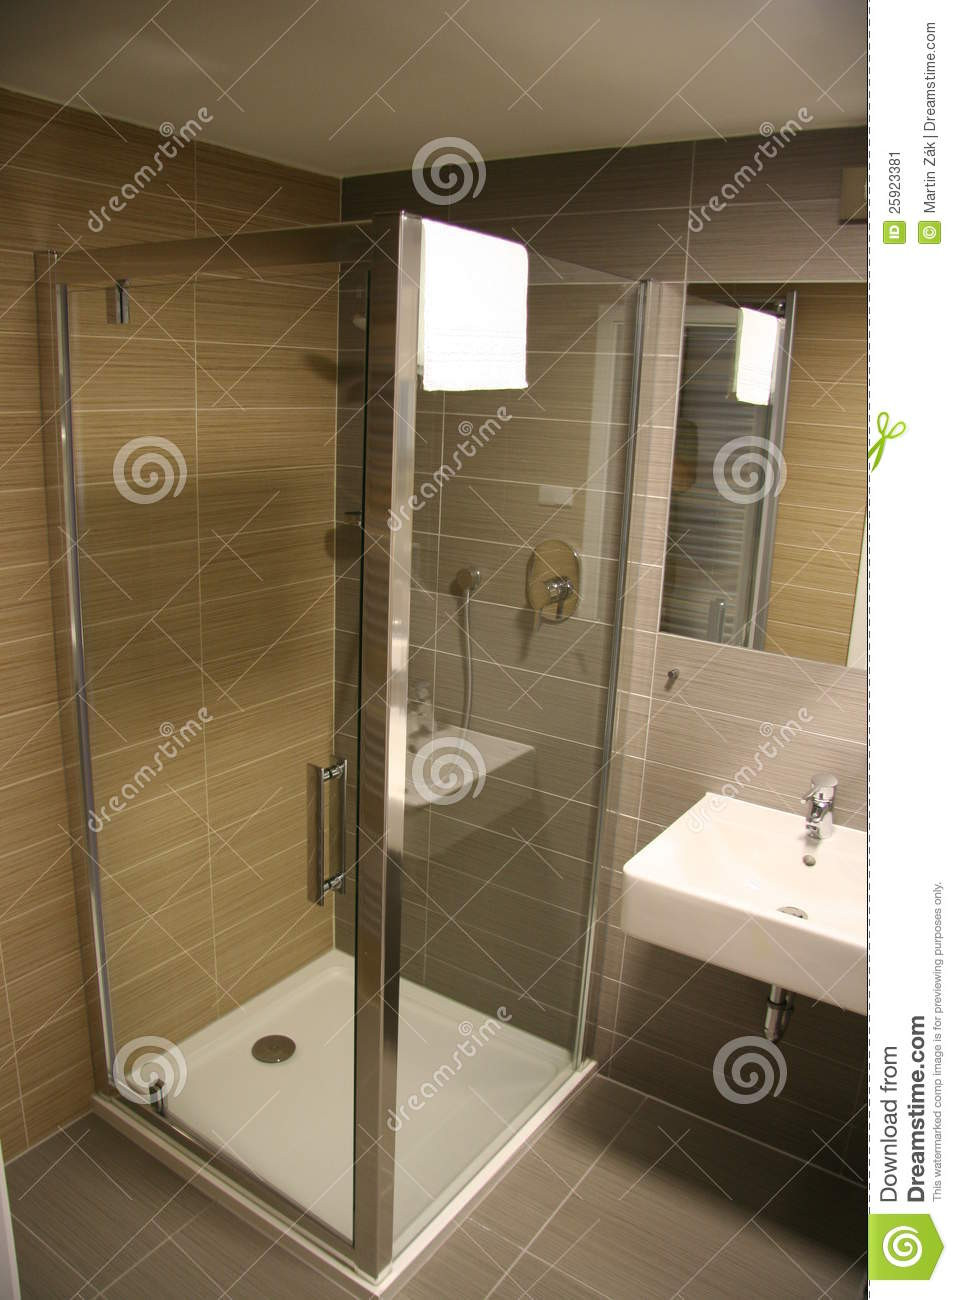 Moderne Dusche
 Moderne Dusche stockbild Bild von frisch sauber hotel